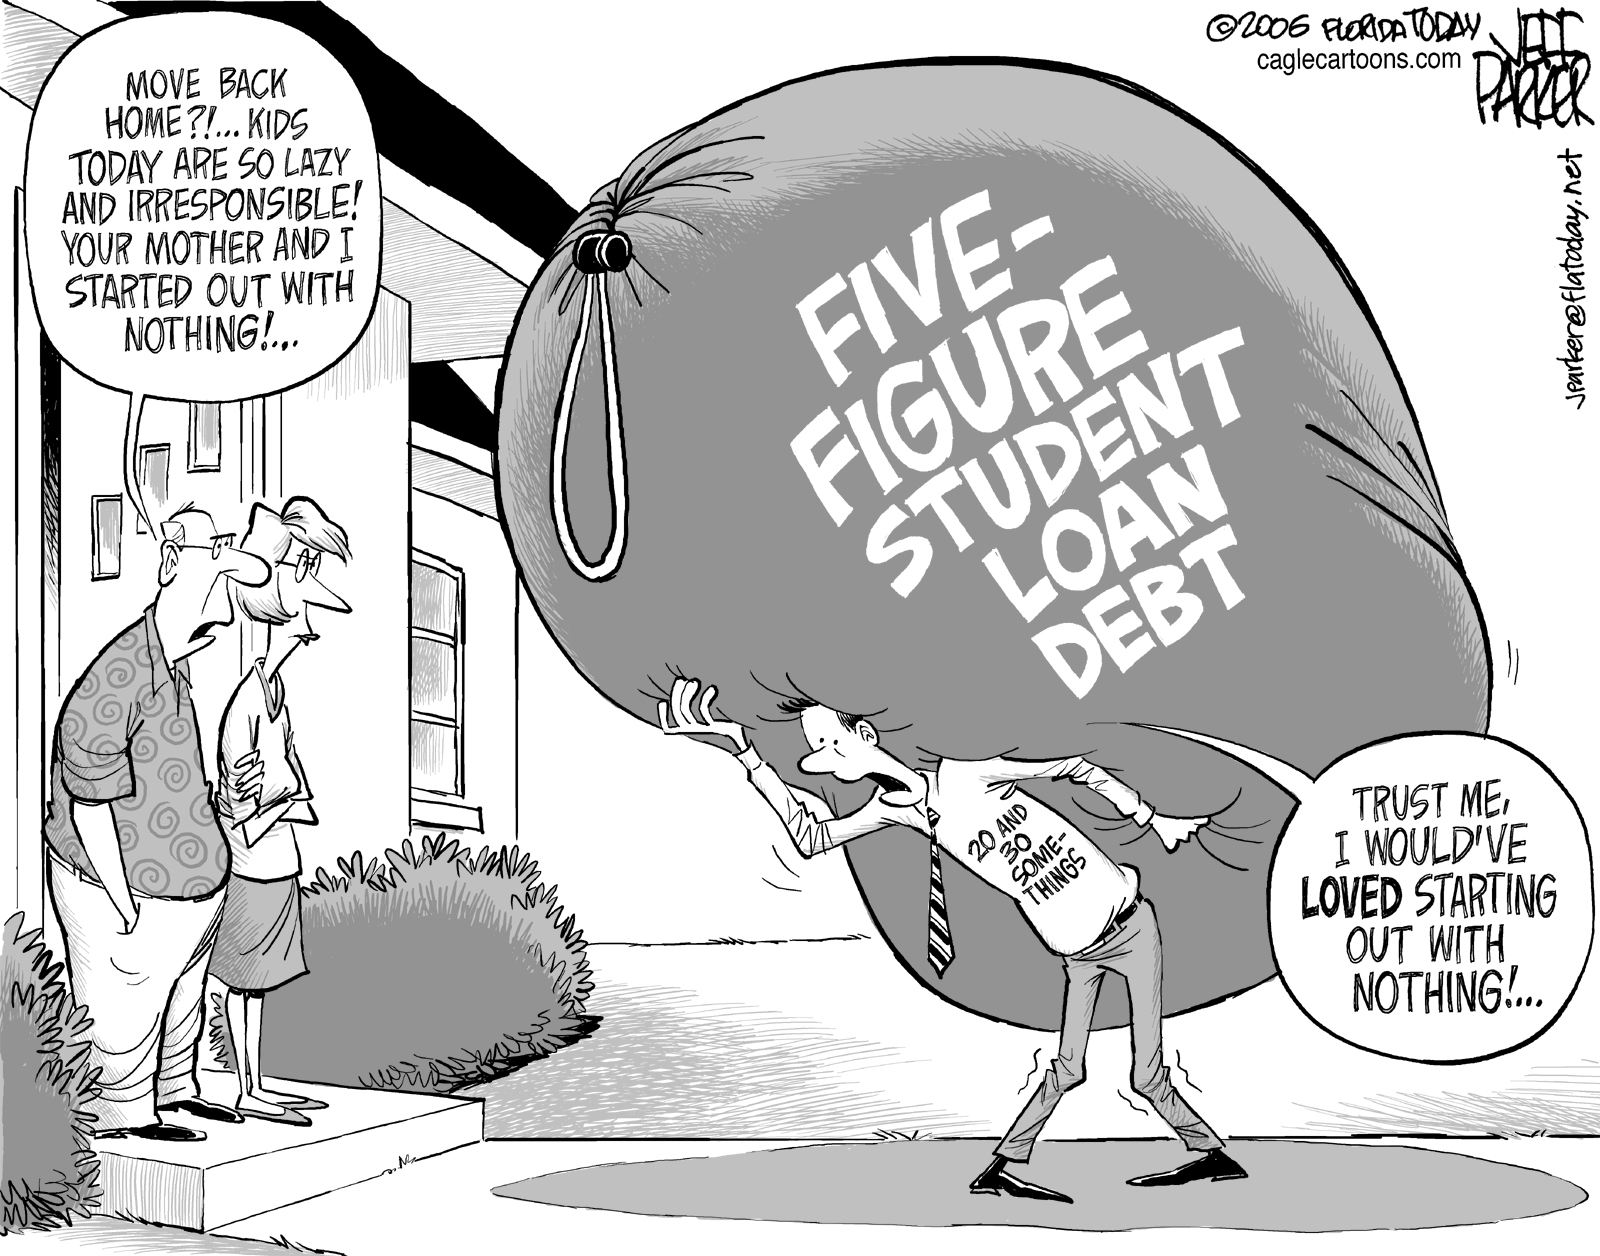 Student credit card debt essay